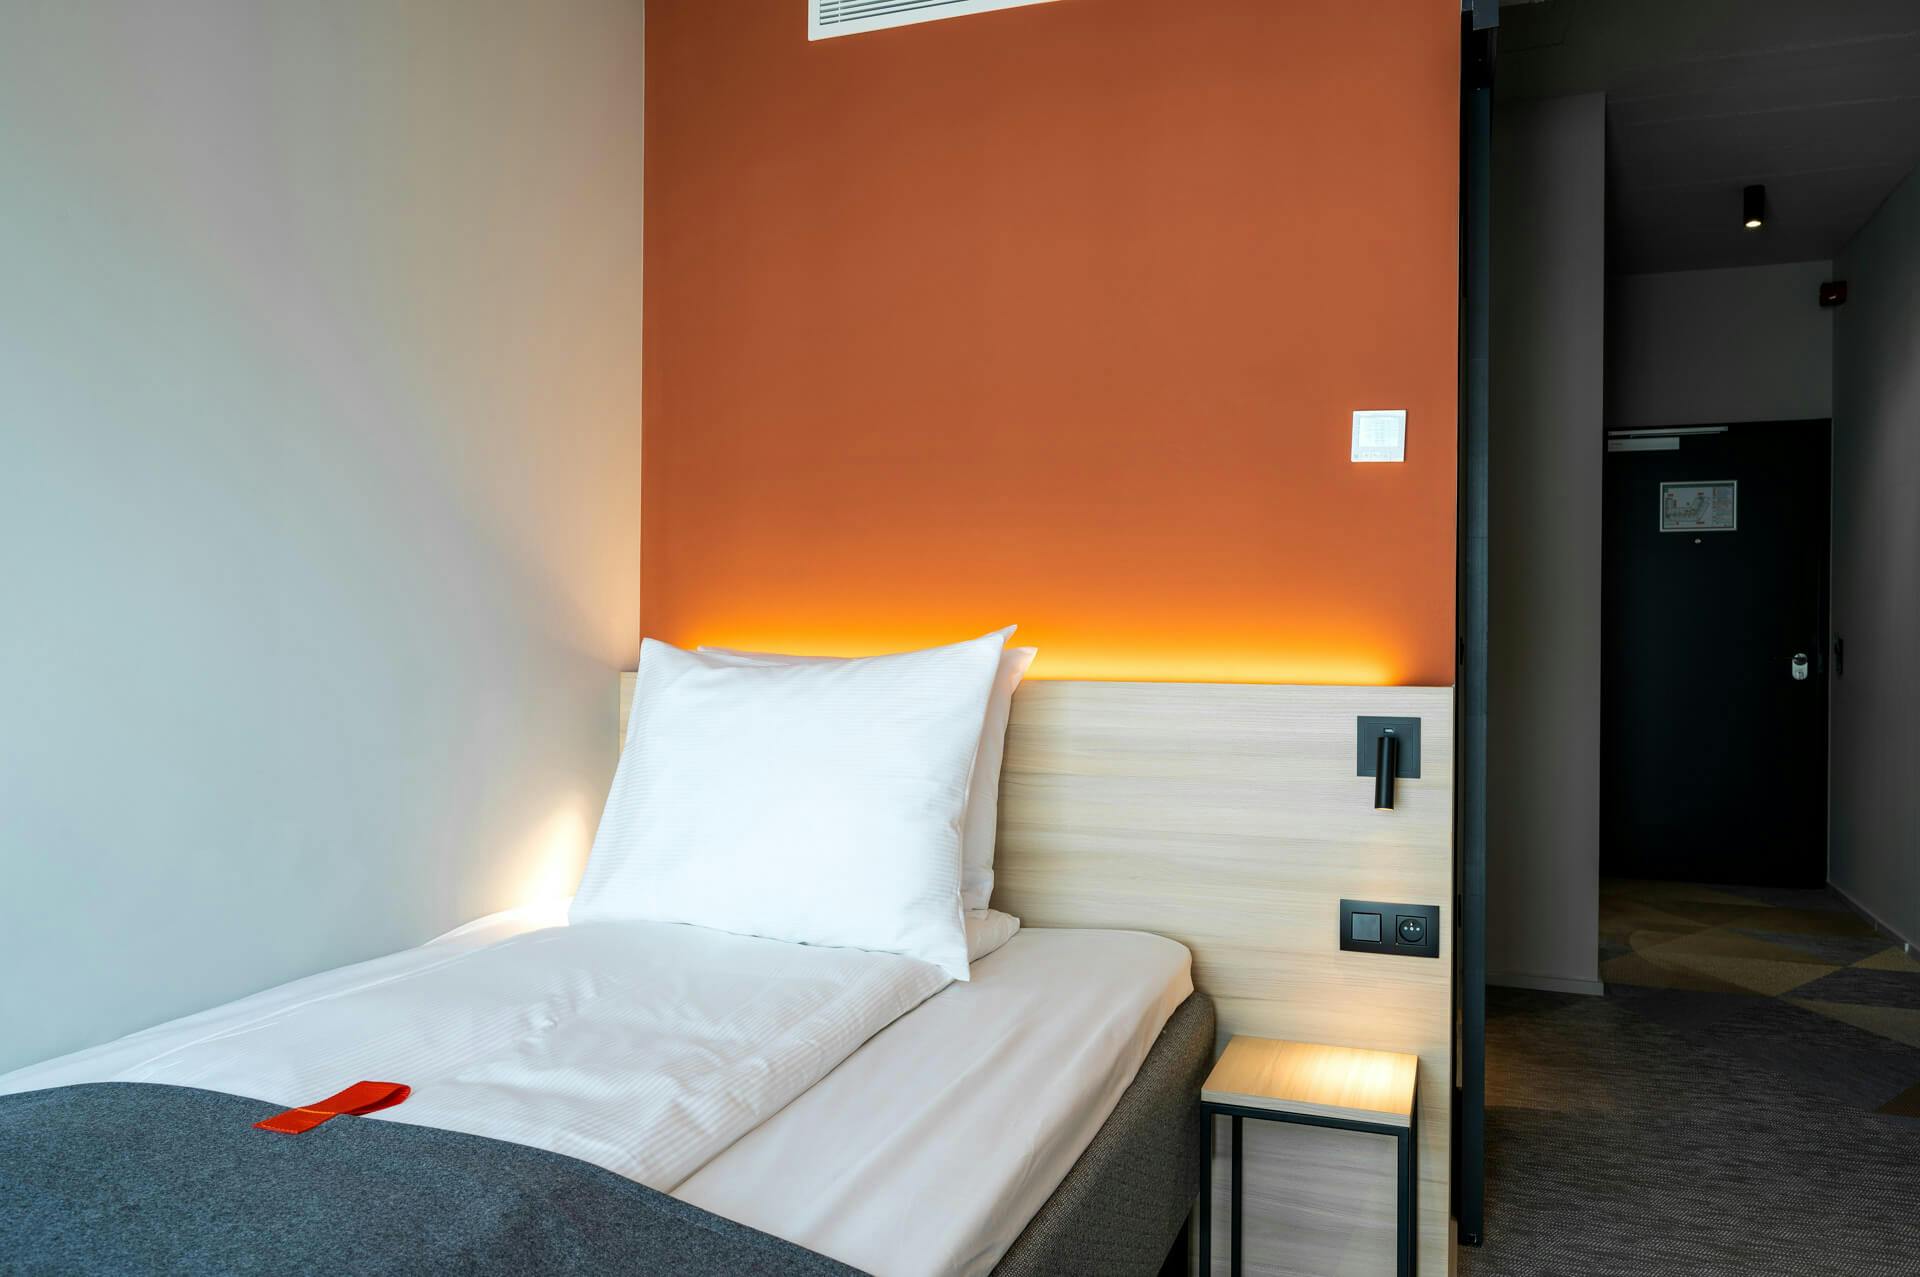 Single bed, orange wall, reading lamp, hallway, door